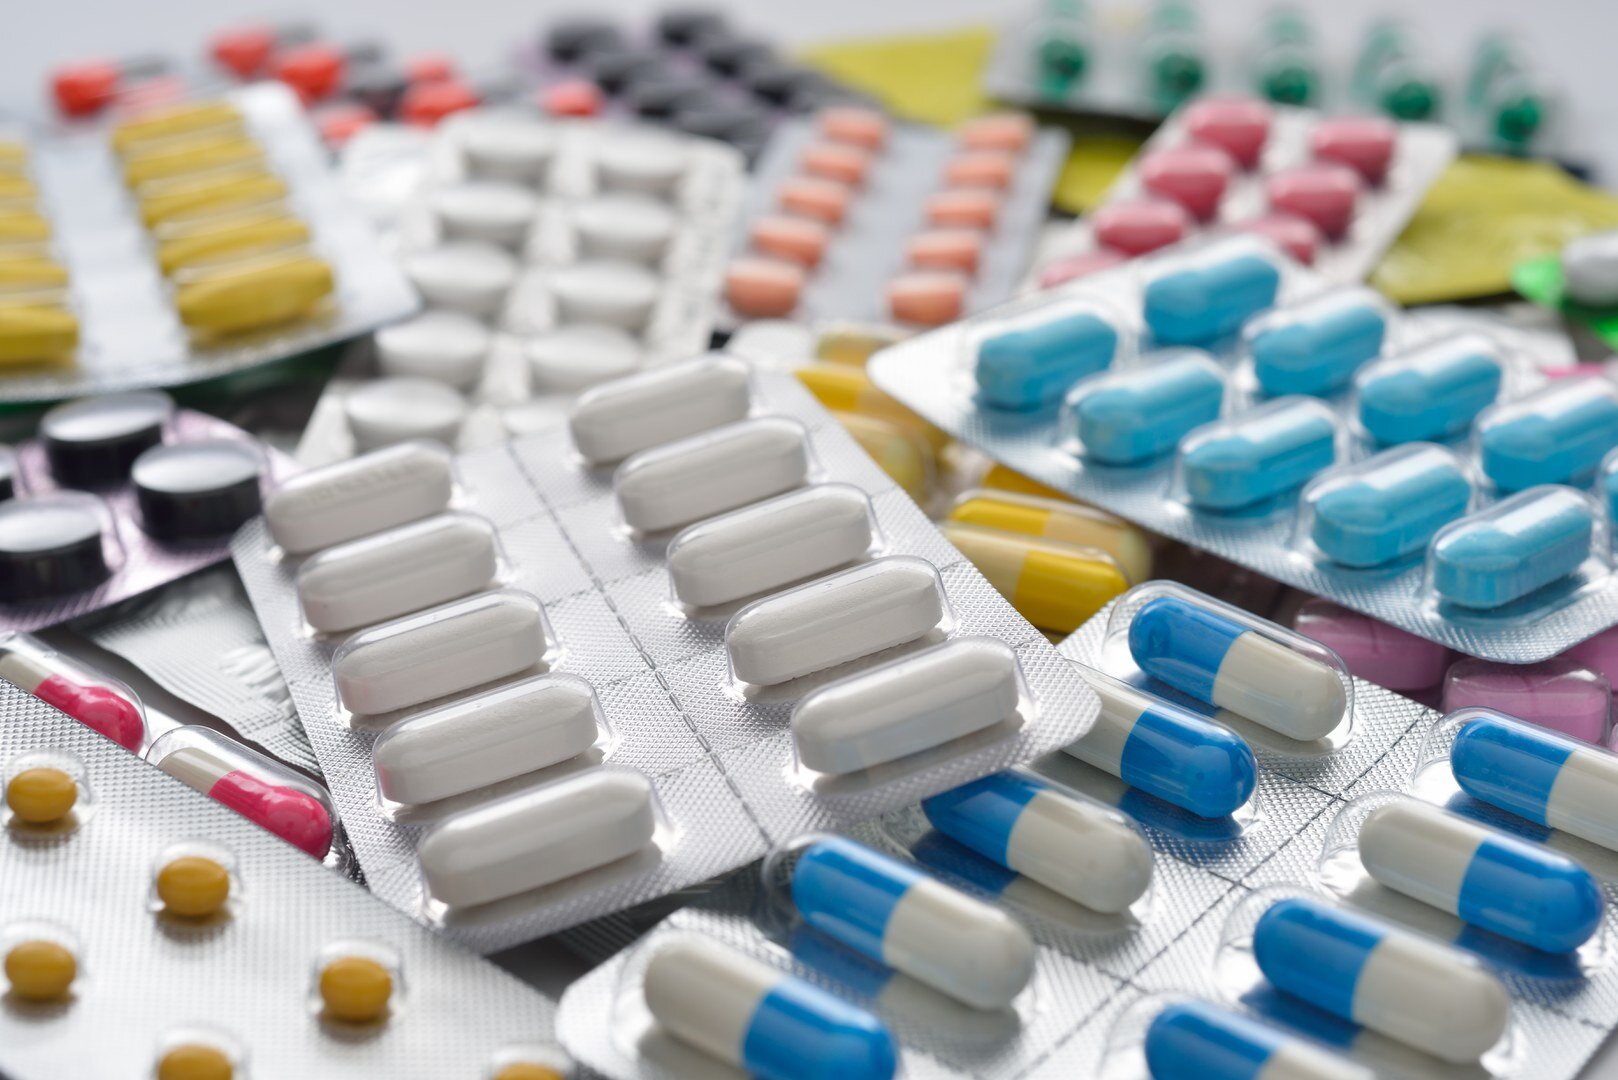  Medicamentos nefrotóxicos: por que alguns remédios fazem mal aos rins